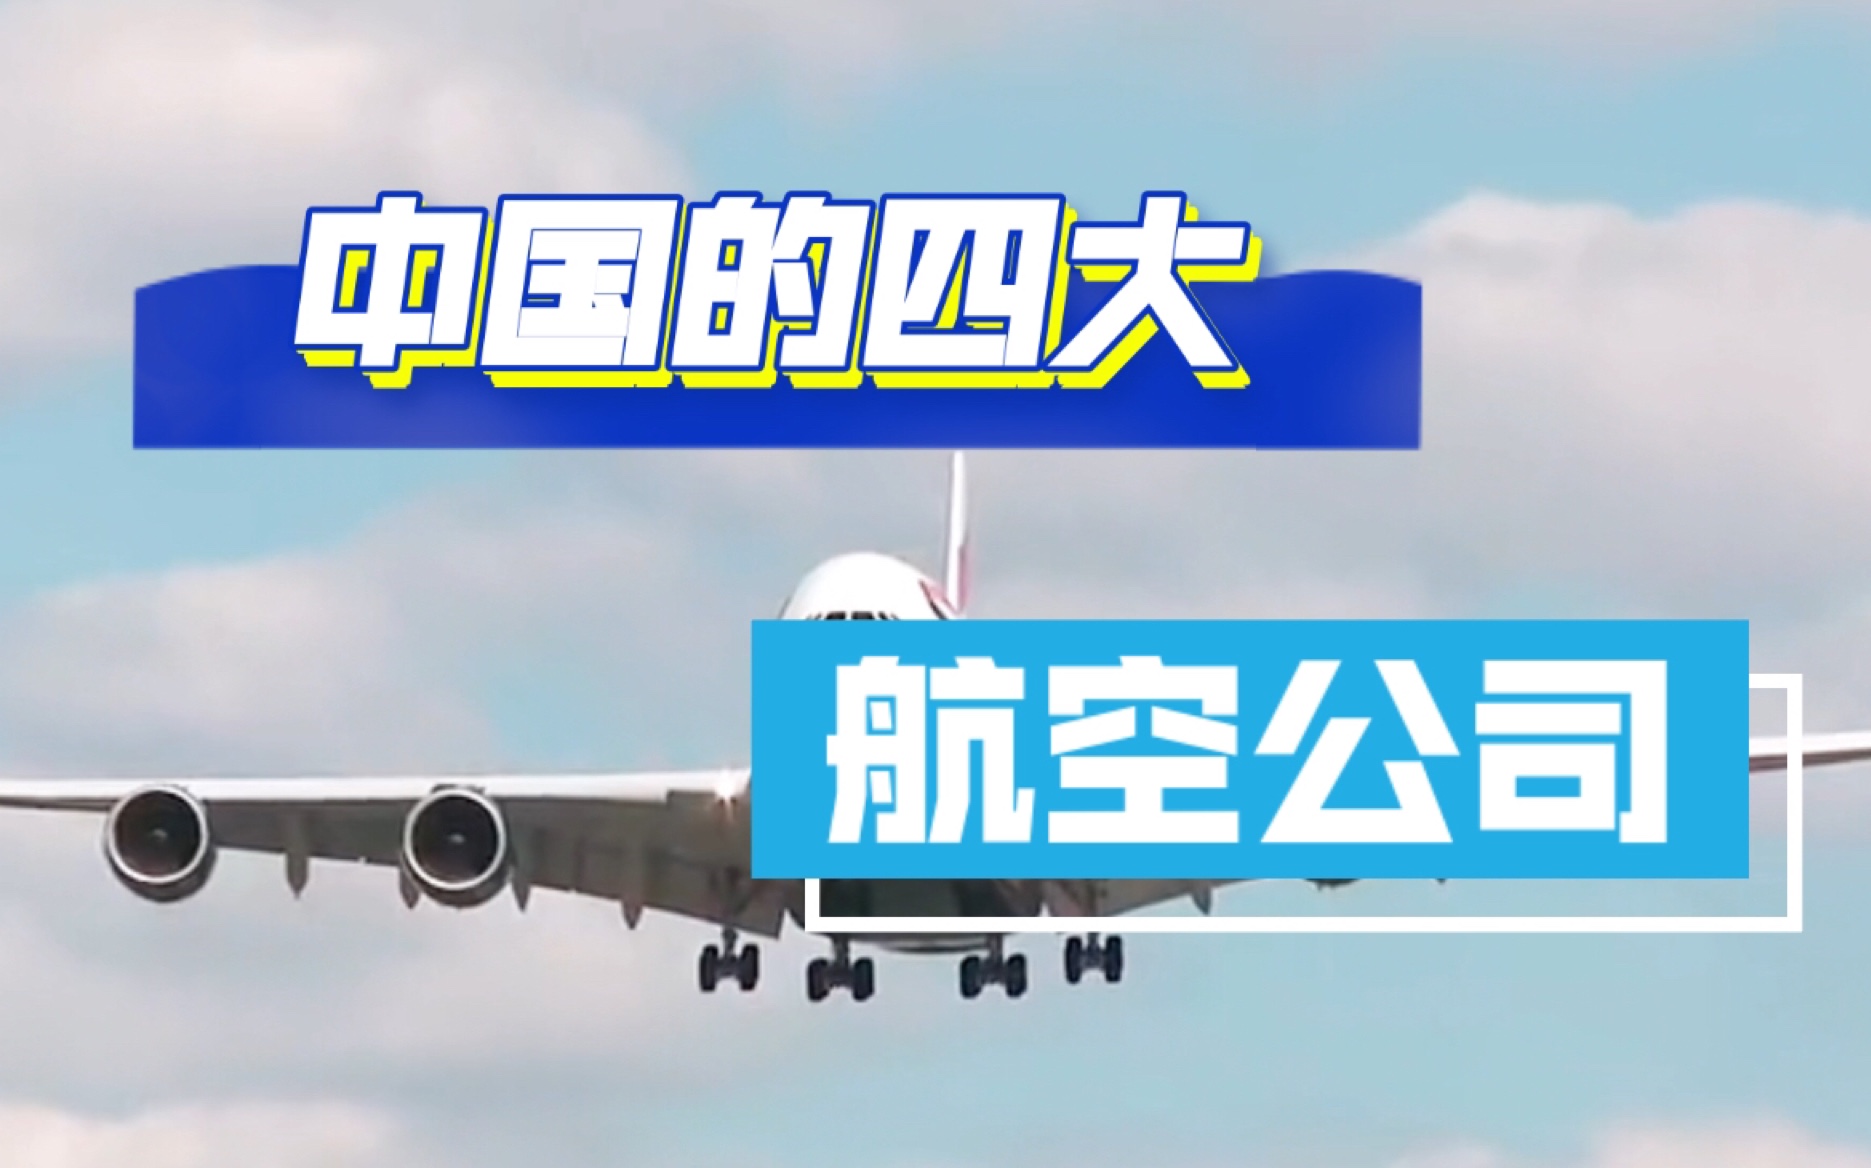 你知道中国的四大航空公司吗？快来了解一下吧！